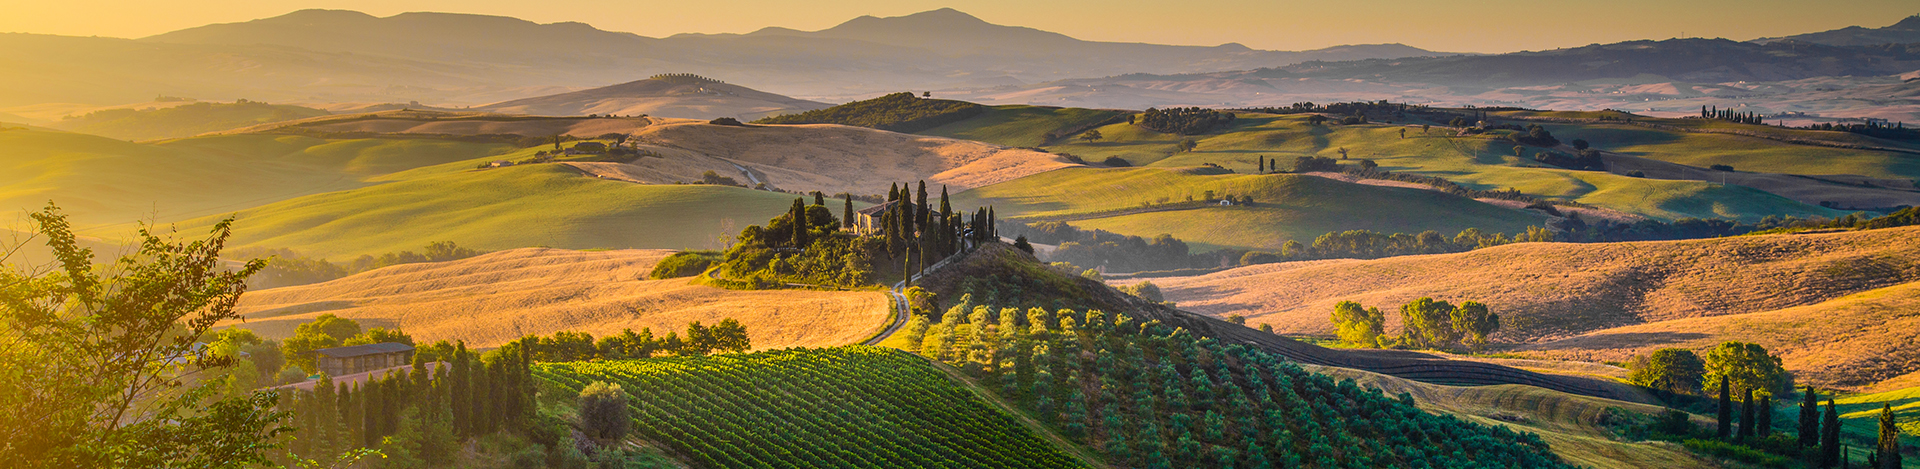 Tuscany landscape at sunrise